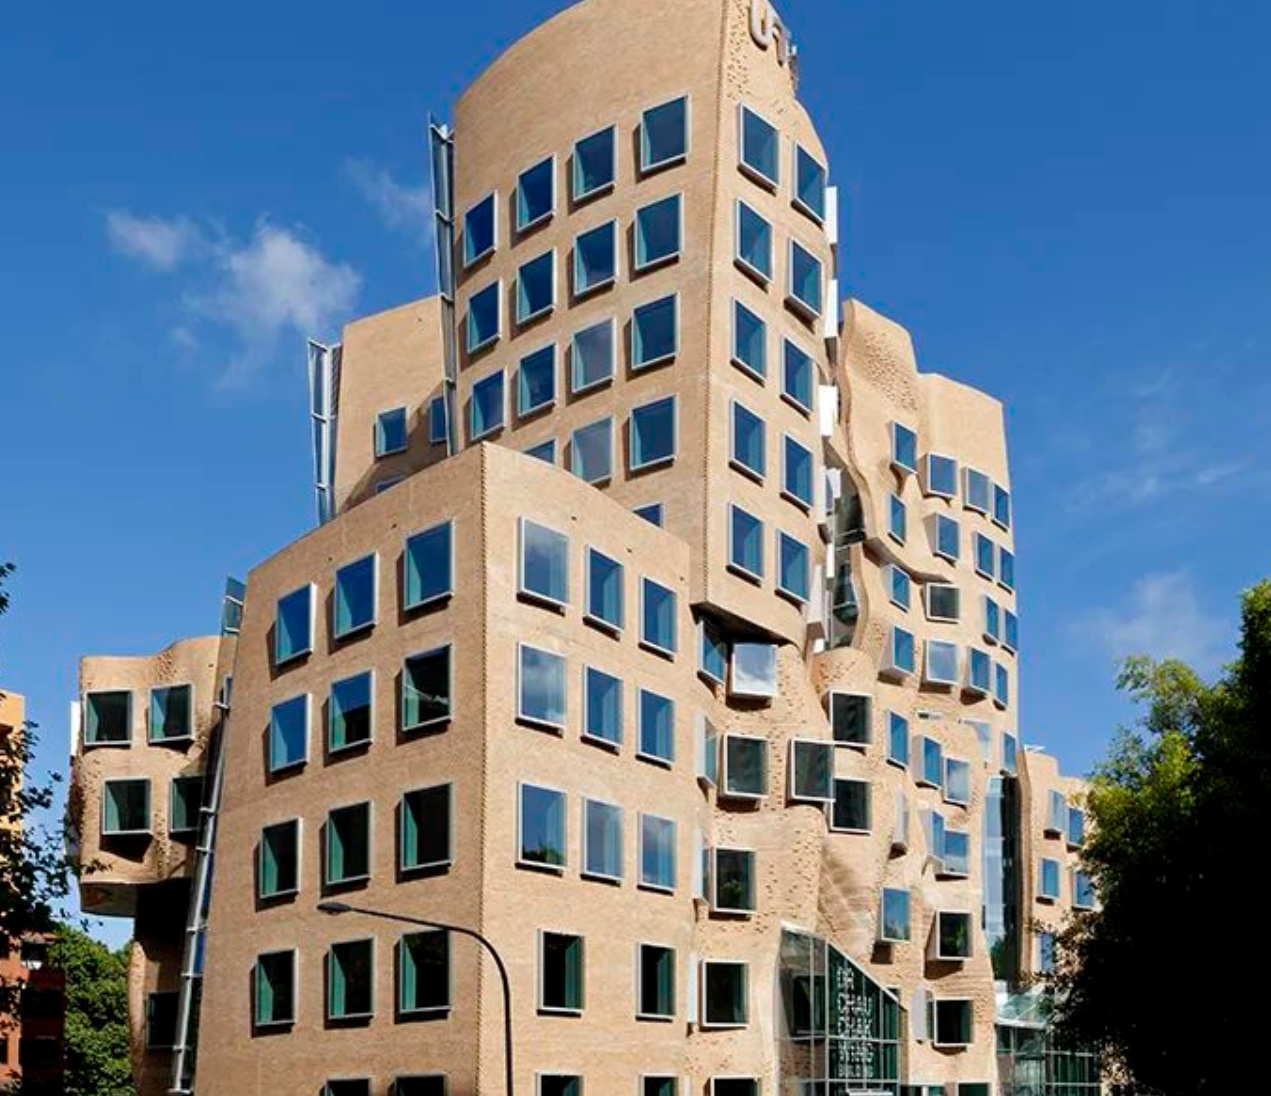 皇家墨尔本理工大学(rmit)是澳大利亚唯一开设摄影硕士的大学,无背景